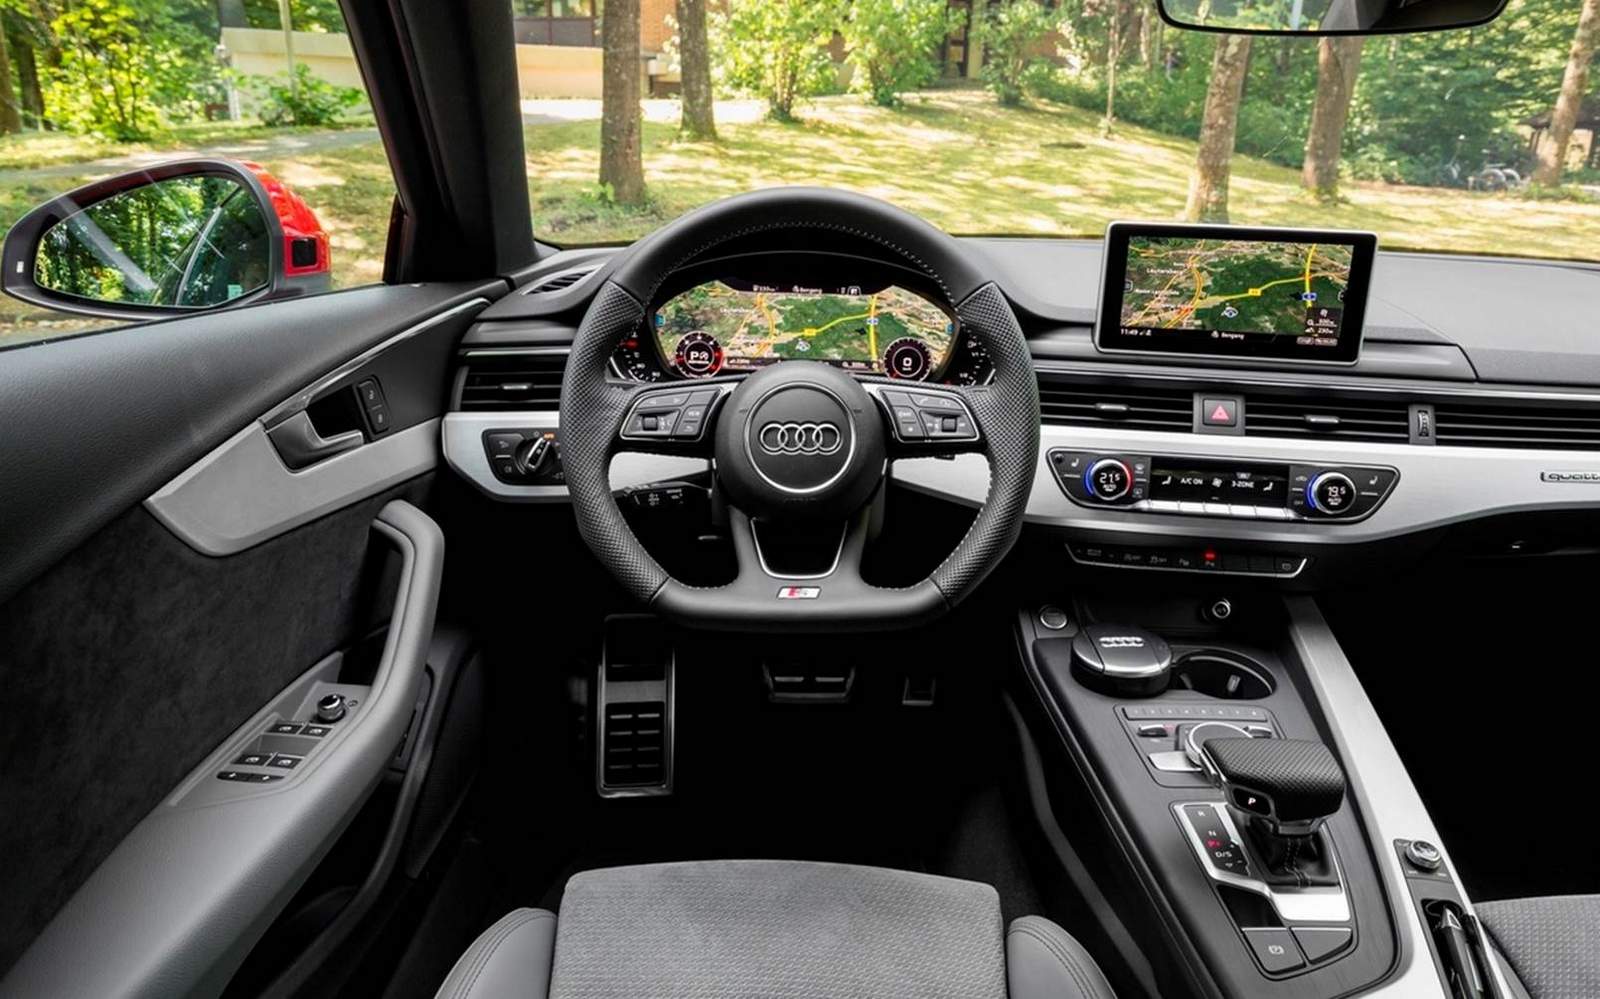 Novo Audi A4 2016 em teste de avaliação na Alemanha